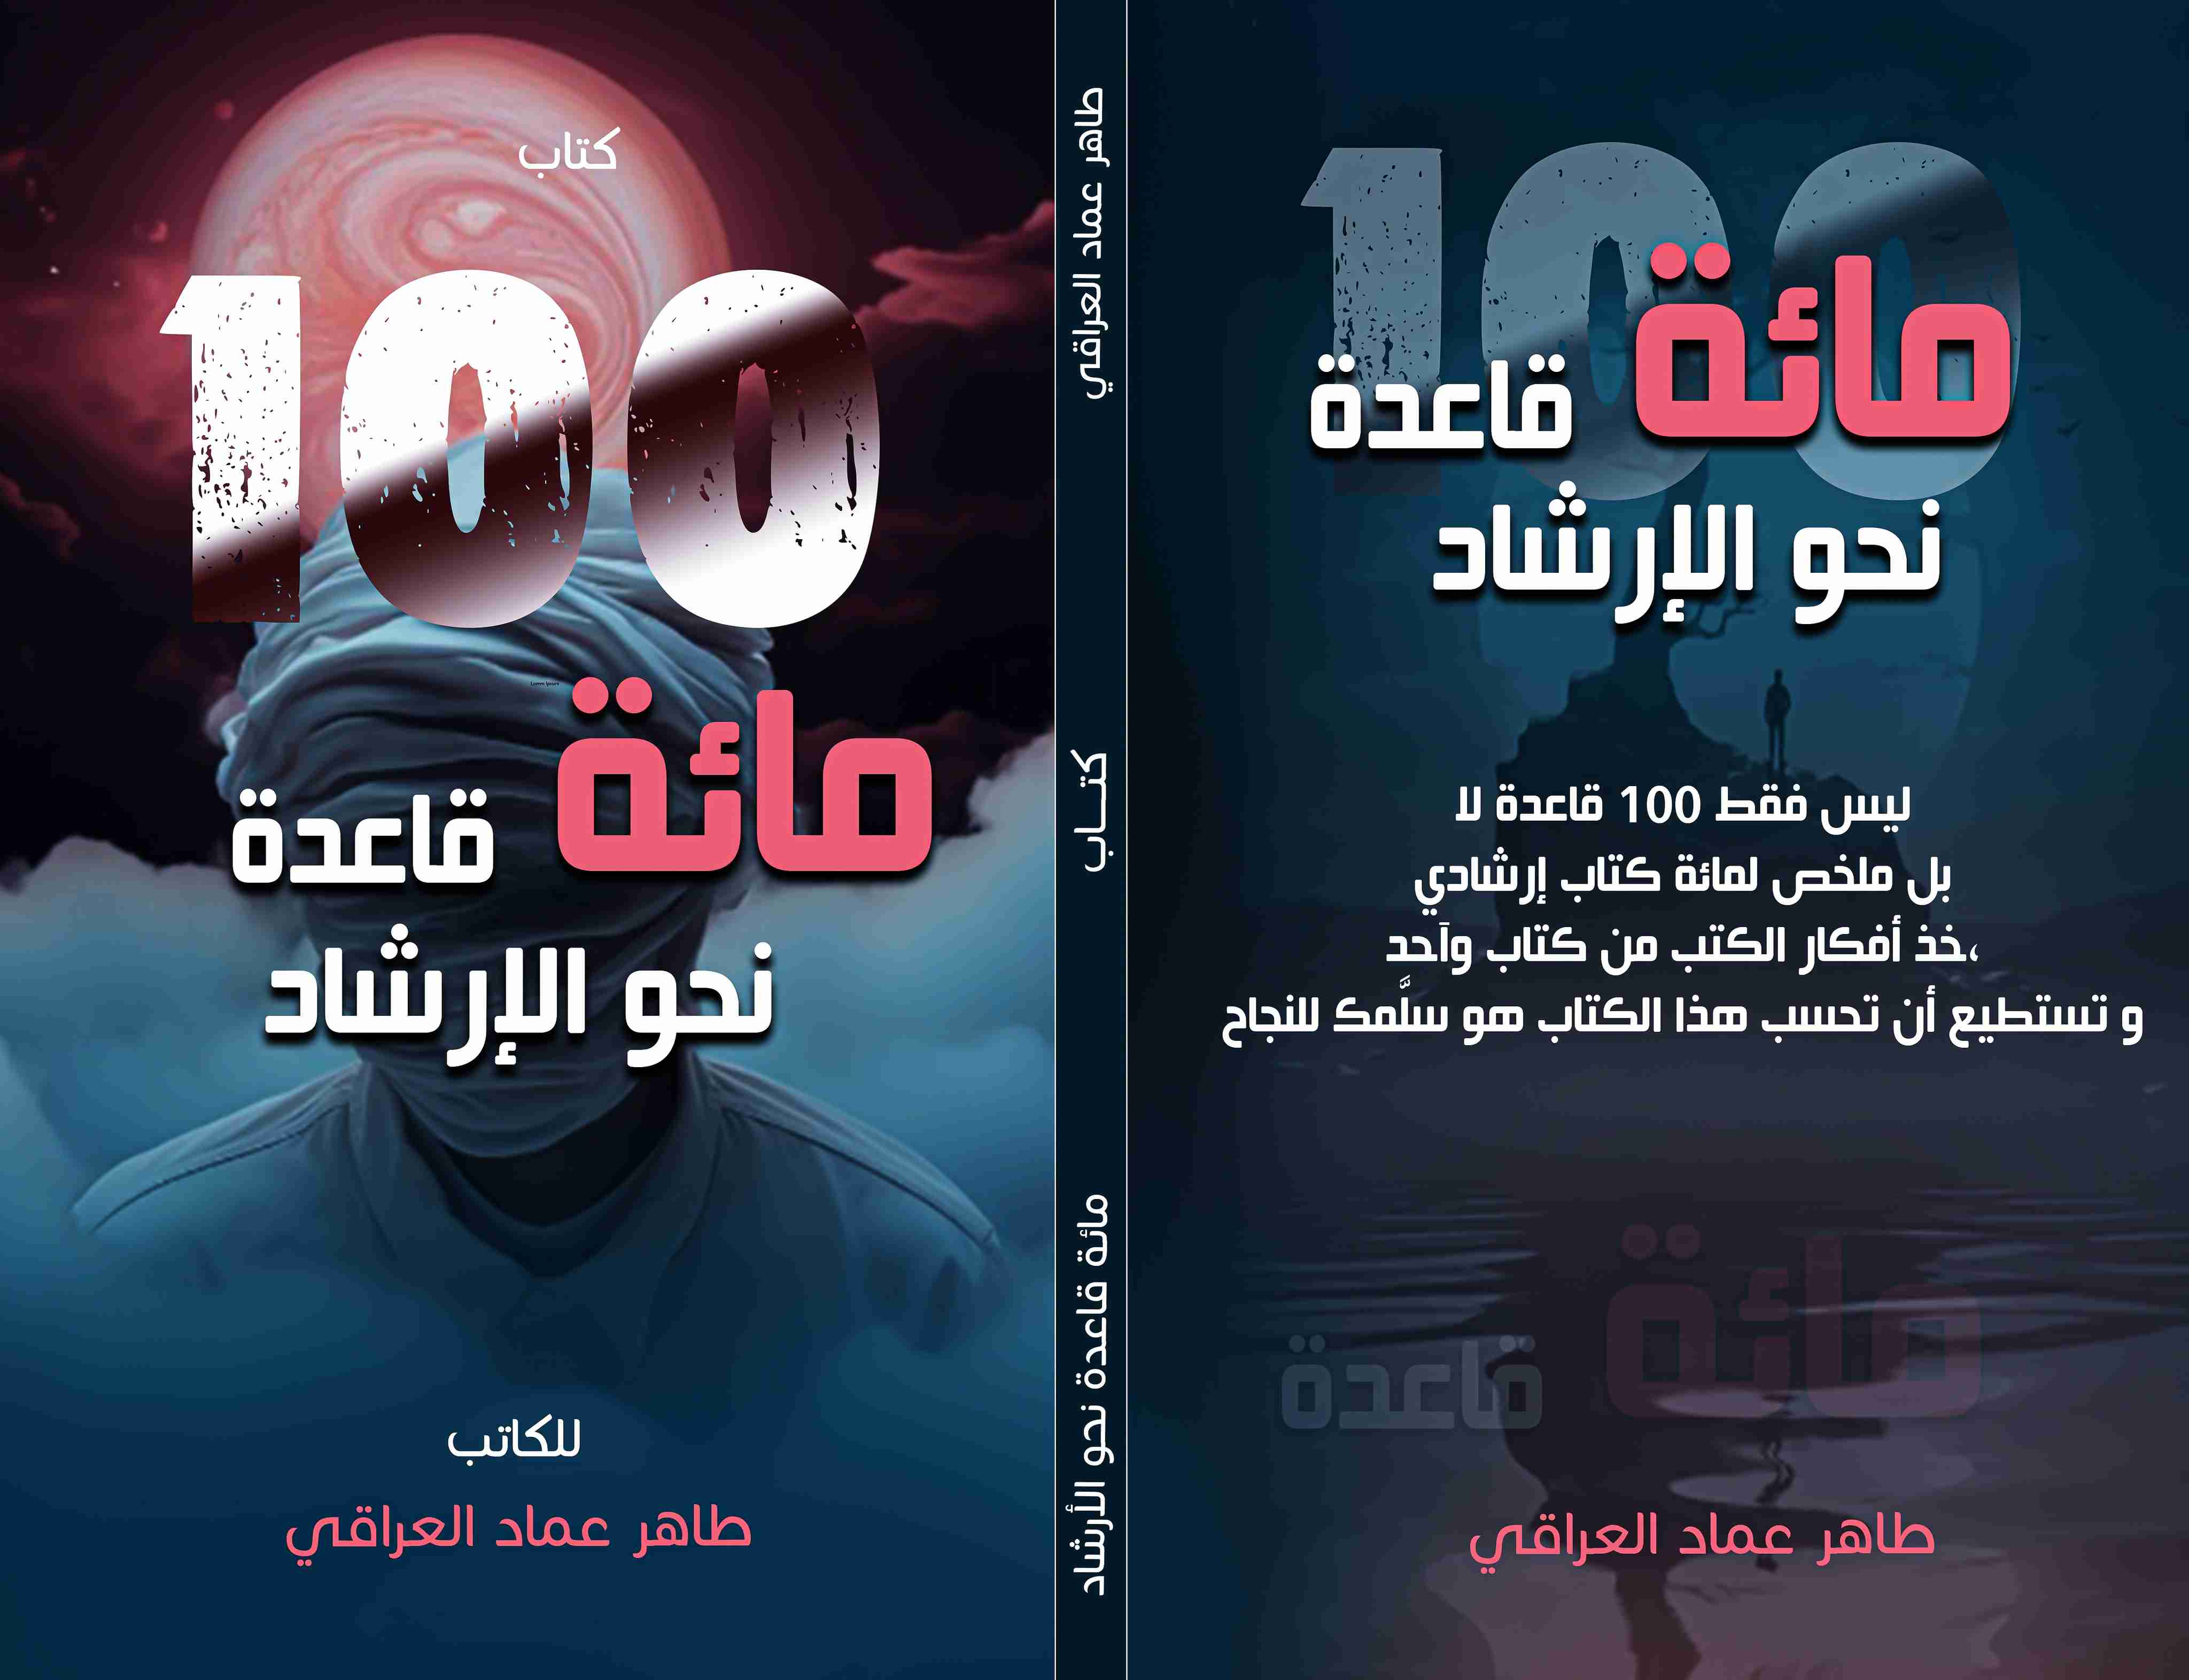 كتاب مائة قاعدة نحو الإرشاد لـ طاهر عماد العراقي